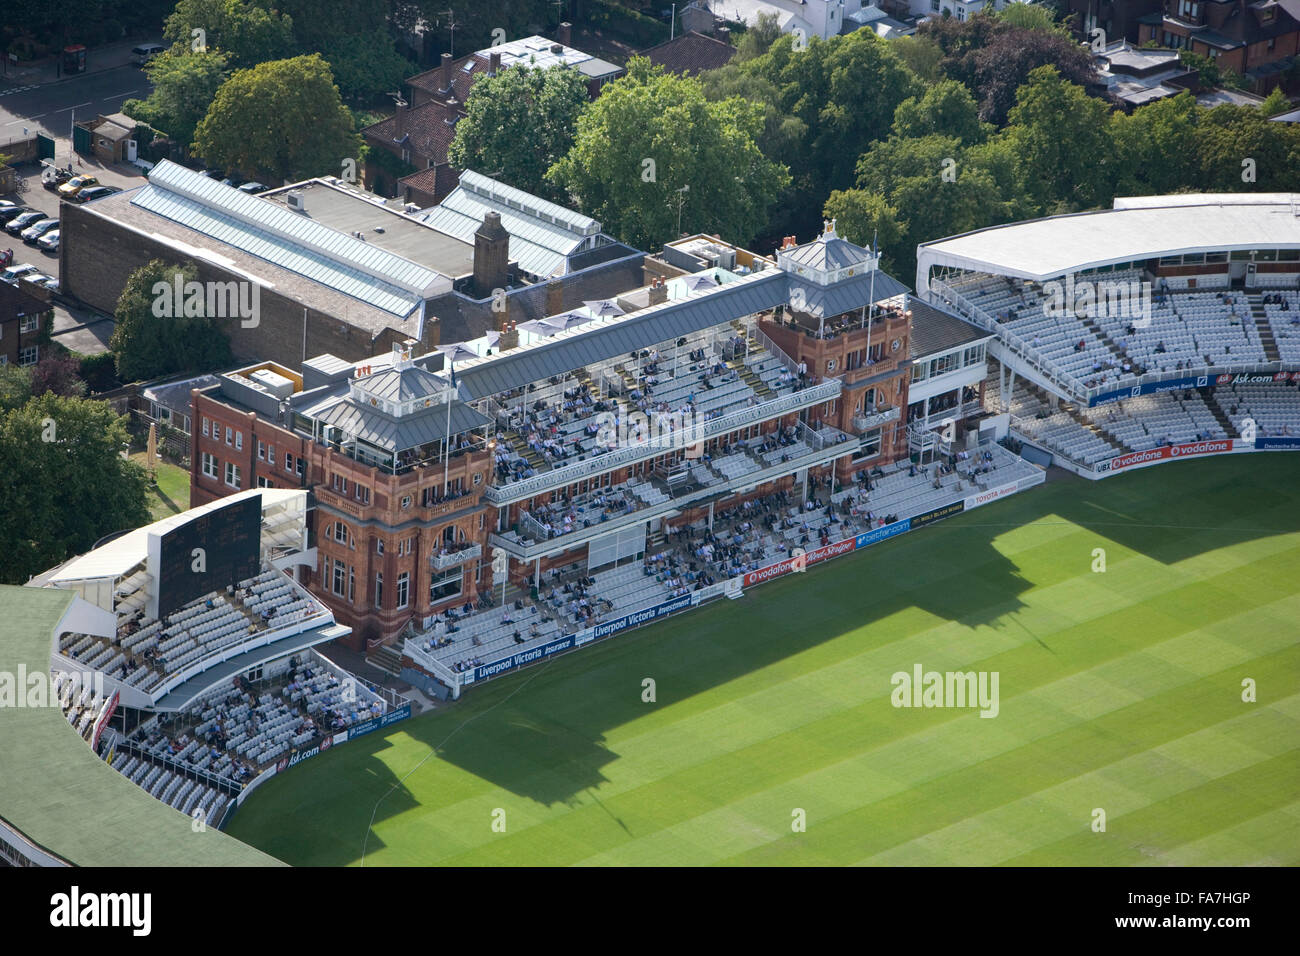 Le Lords Cricket Ground, St John's Wood, Londres. Fondée sur ce site en 1814 la Maison du cricket est administré par le Marylebone Cricket Club (MCC), et est l'hôte de Middlesex County Cricket et l'Angleterre et Pays de Galles Cricket Board. Le Pavillon, présentée ici, a été bui Banque D'Images